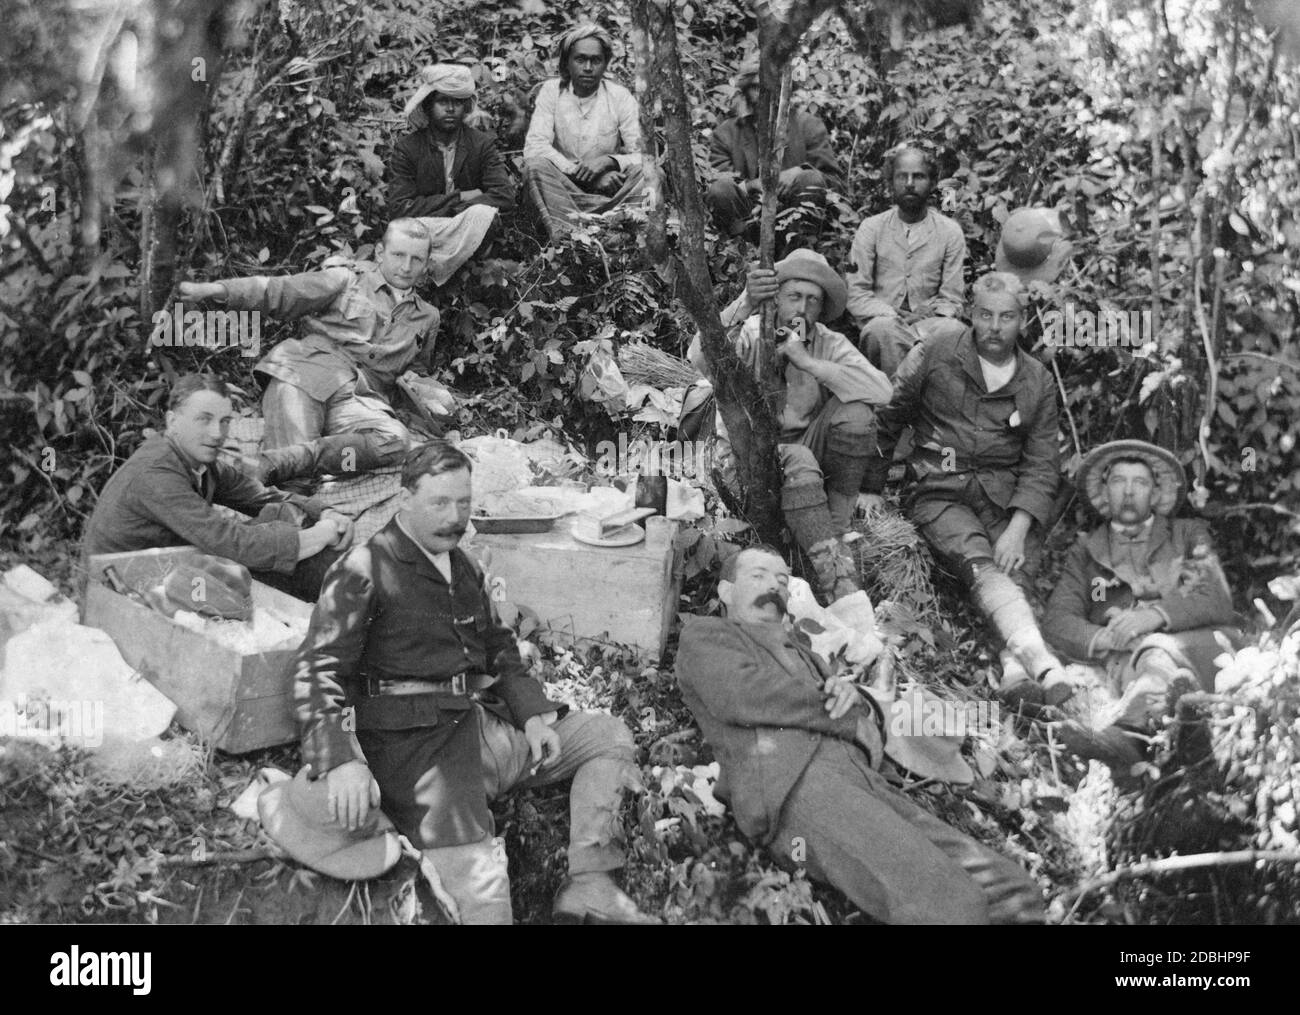 Il principe Enrico di Prussia (centro, che tiene su un albero e fuma un tubo) è in un viaggio di caccia a Nuwara Eliya in Sri Lanka. La festa di caccia sta facendo una pausa con cibo e bevande. La foto è stata probabilmente scattata nel 1890. Foto Stock